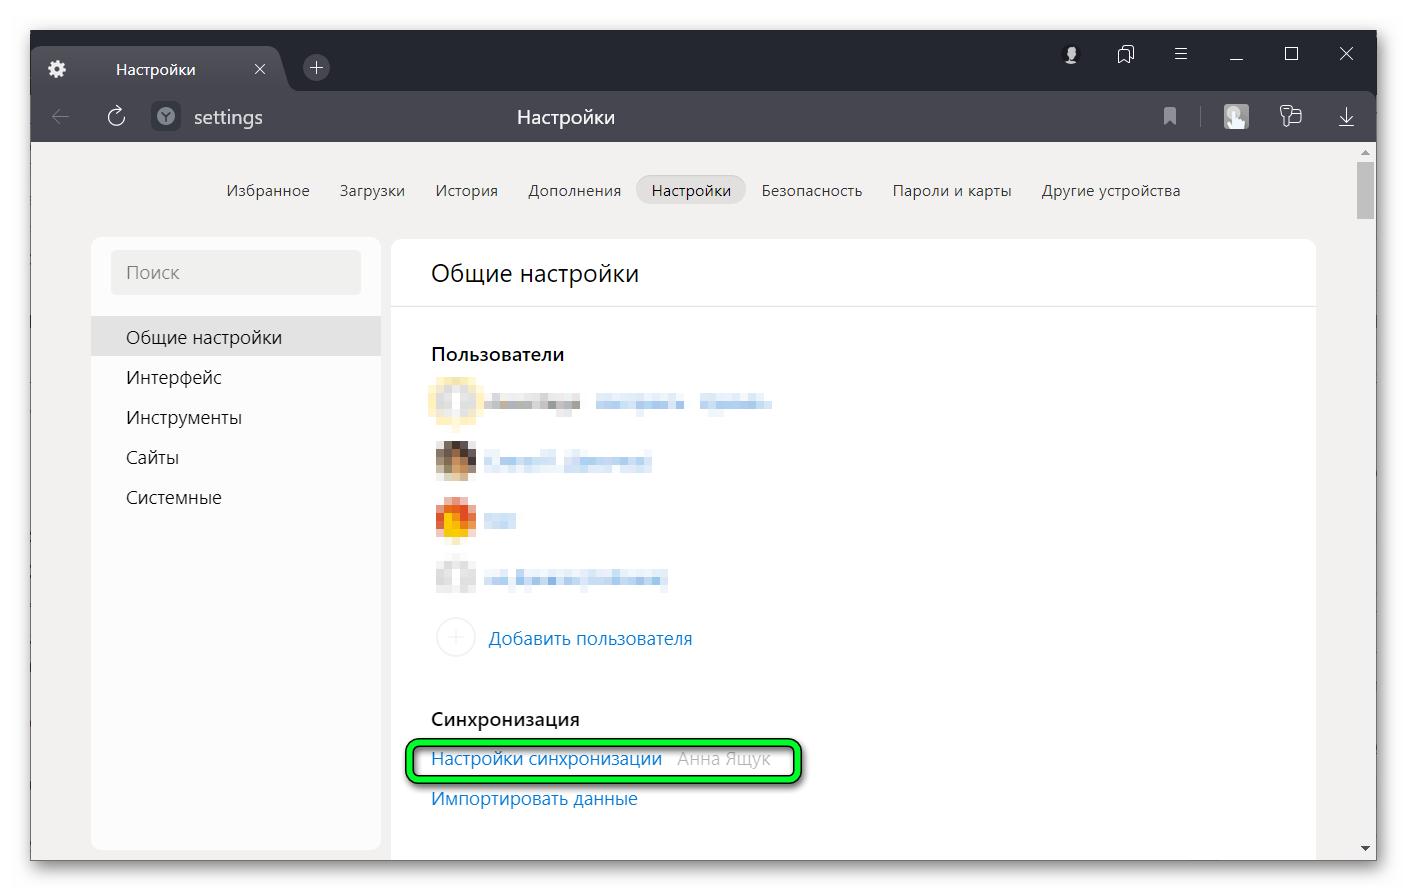 Настройки - Яндекс-Браузер для восстановления истории